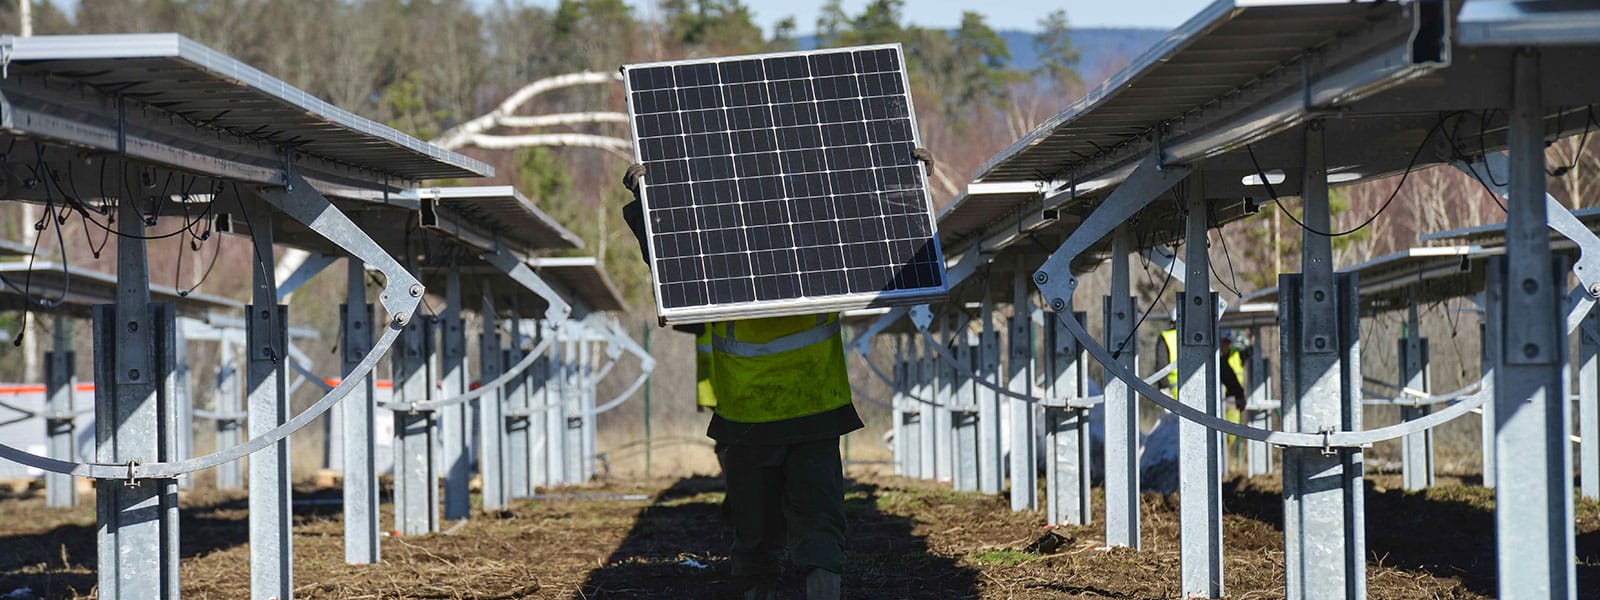 Nouvelles du soleil en Corrèze : construction de la centrale solaire photovoltaïquede ZAC Montane Nord